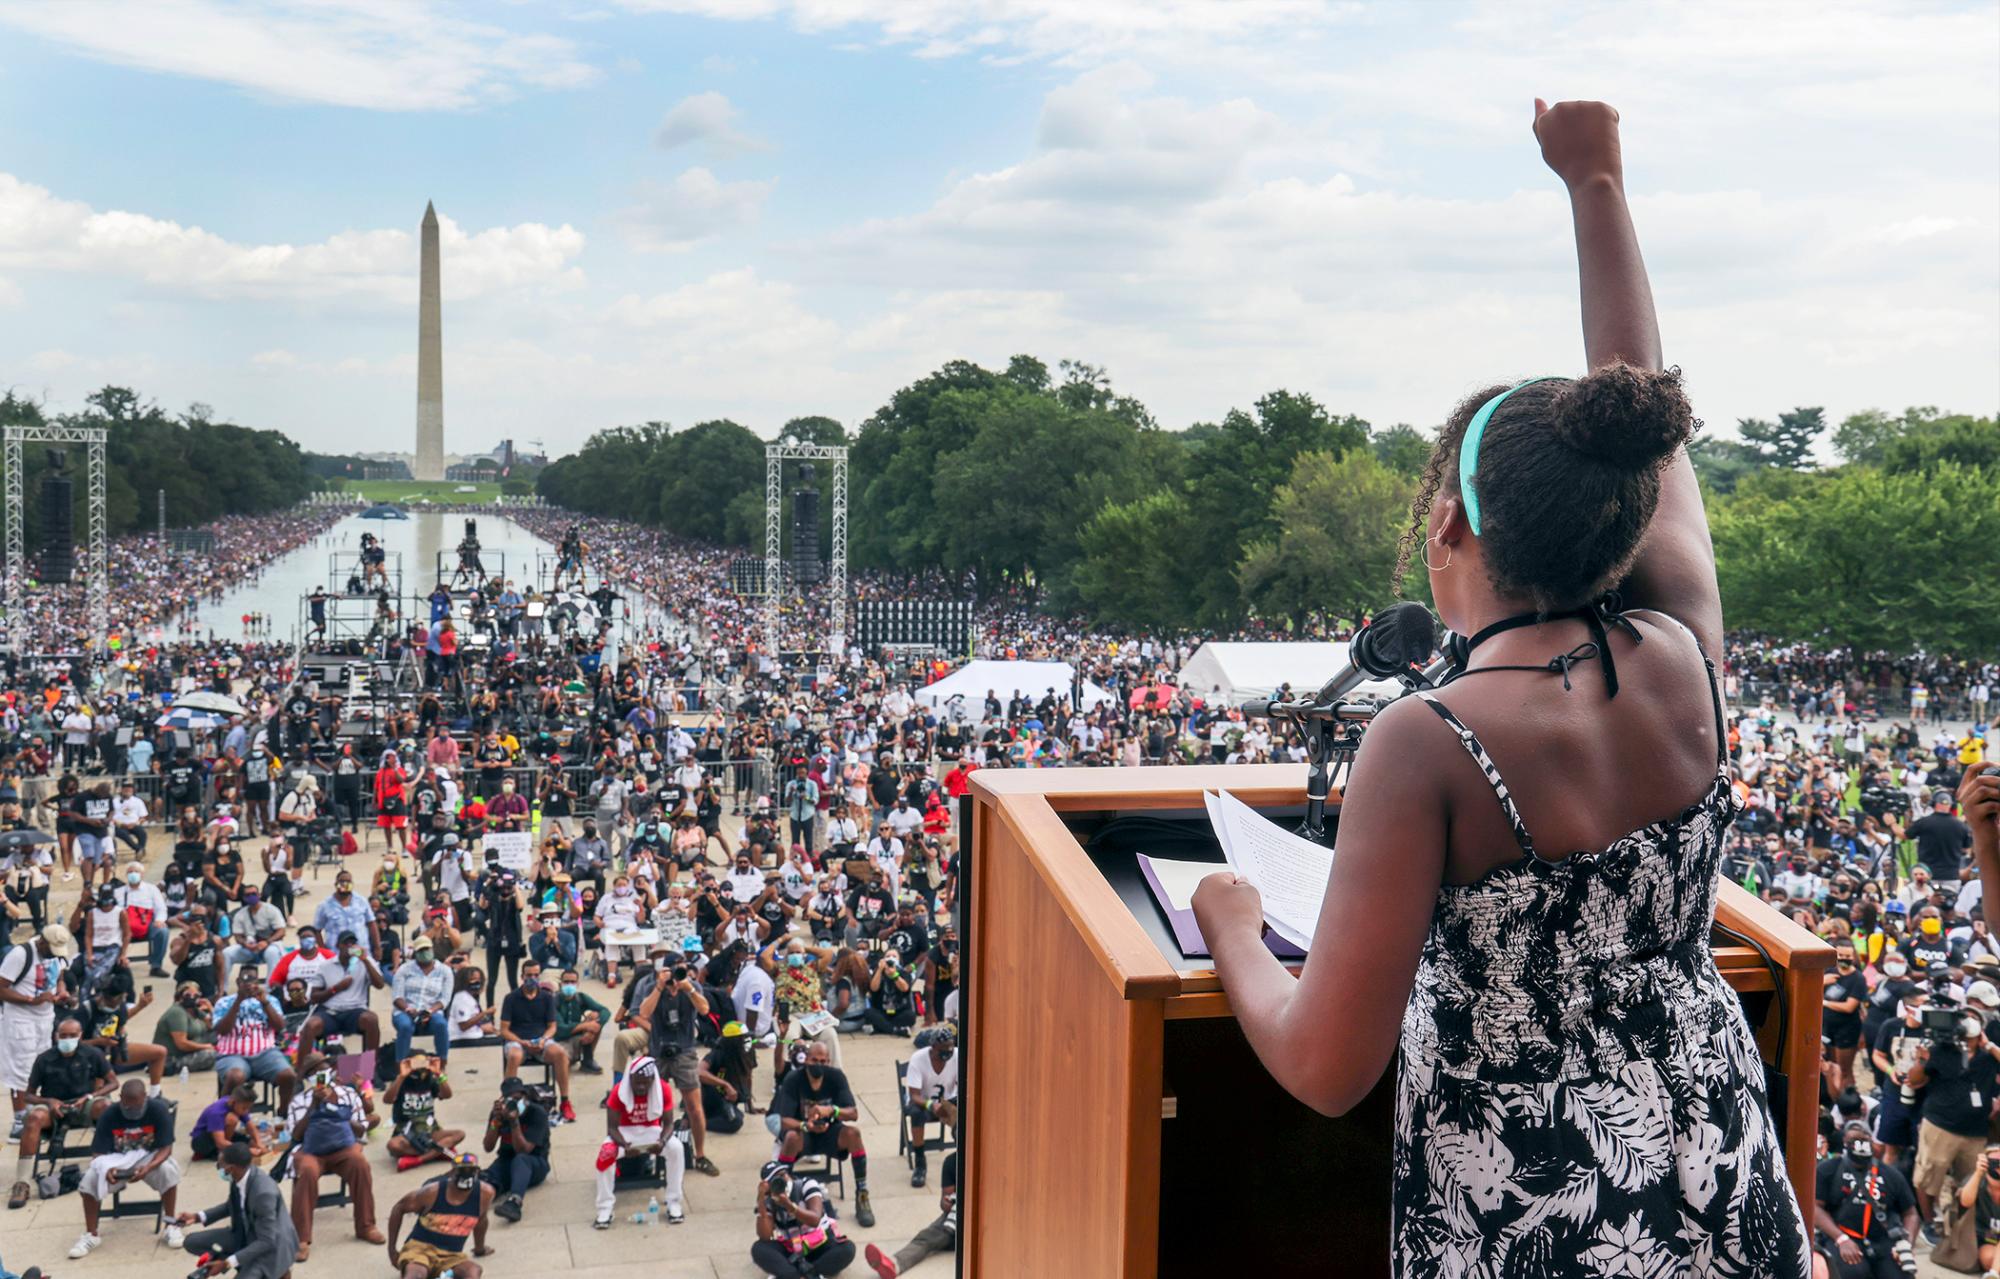 Yolanda Renee King, nieta del reverendo Martin Luther King Jr., levanta el puño mientras habla durante la Marcha Las vidas negras importan, el viernes 28 de agosto de 2020, en Washington, para conmemorar el 57 aniversario. “Tengo un sueño” del reverendo Martin Luther King Jr.